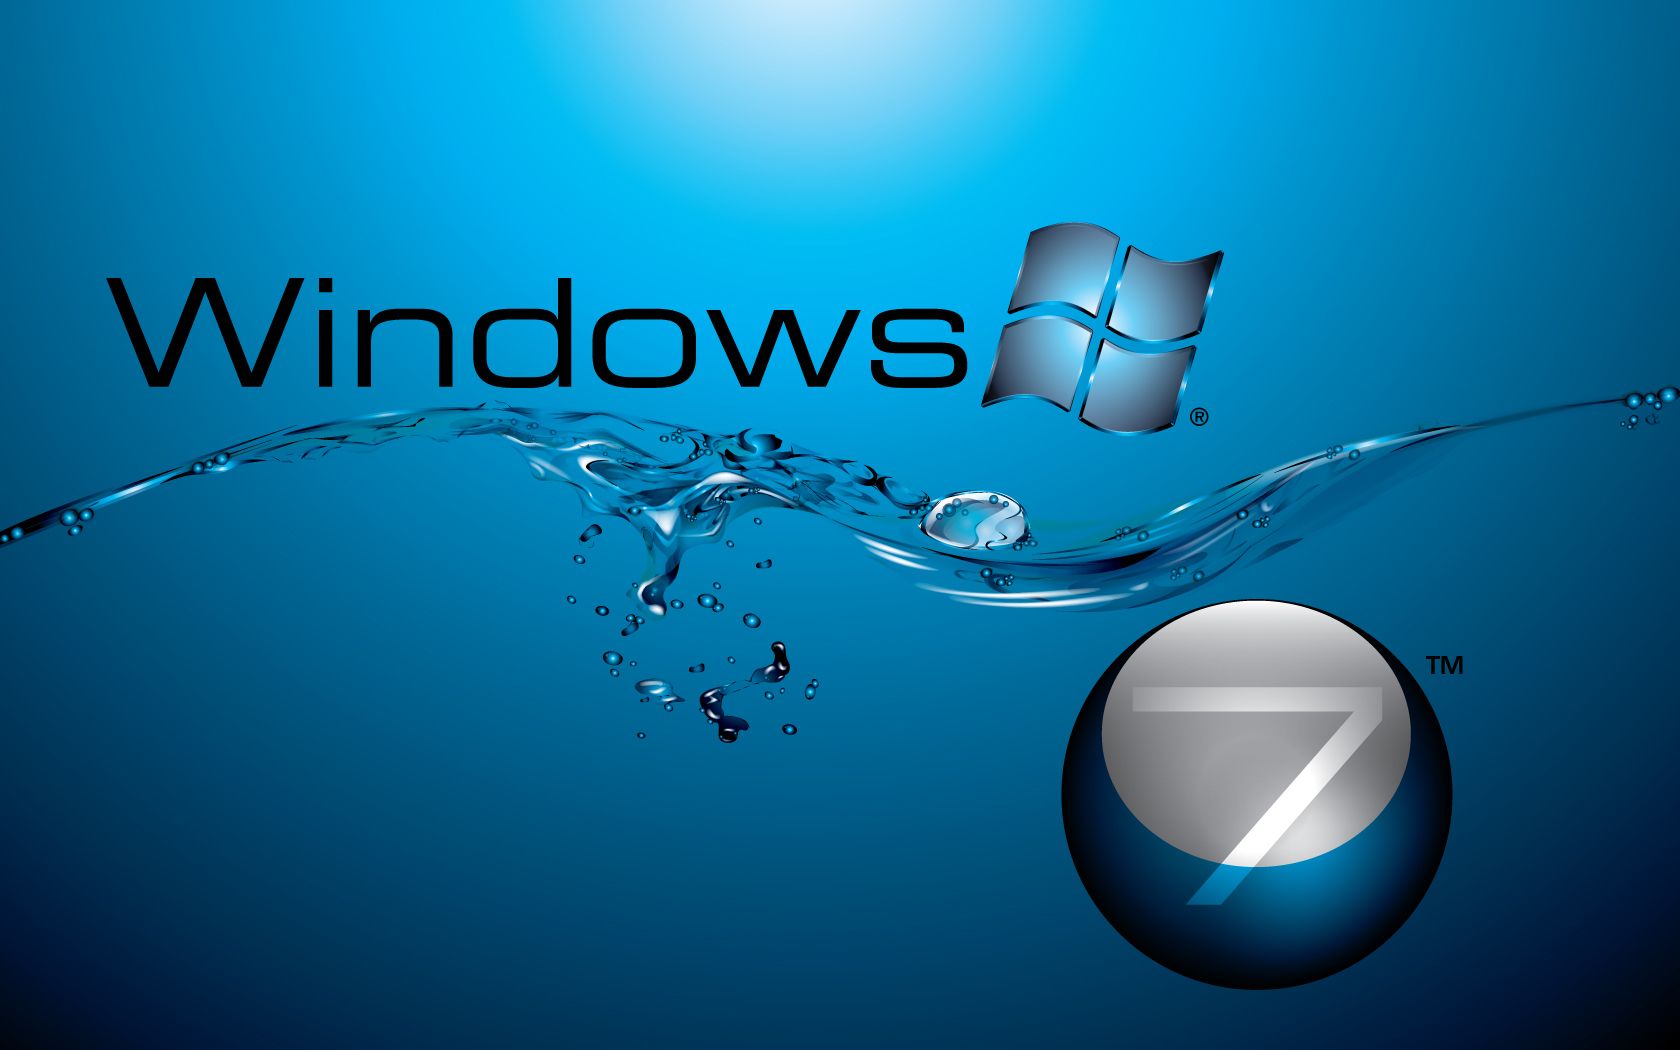 windows_7_in_water_flow-wide.jpg